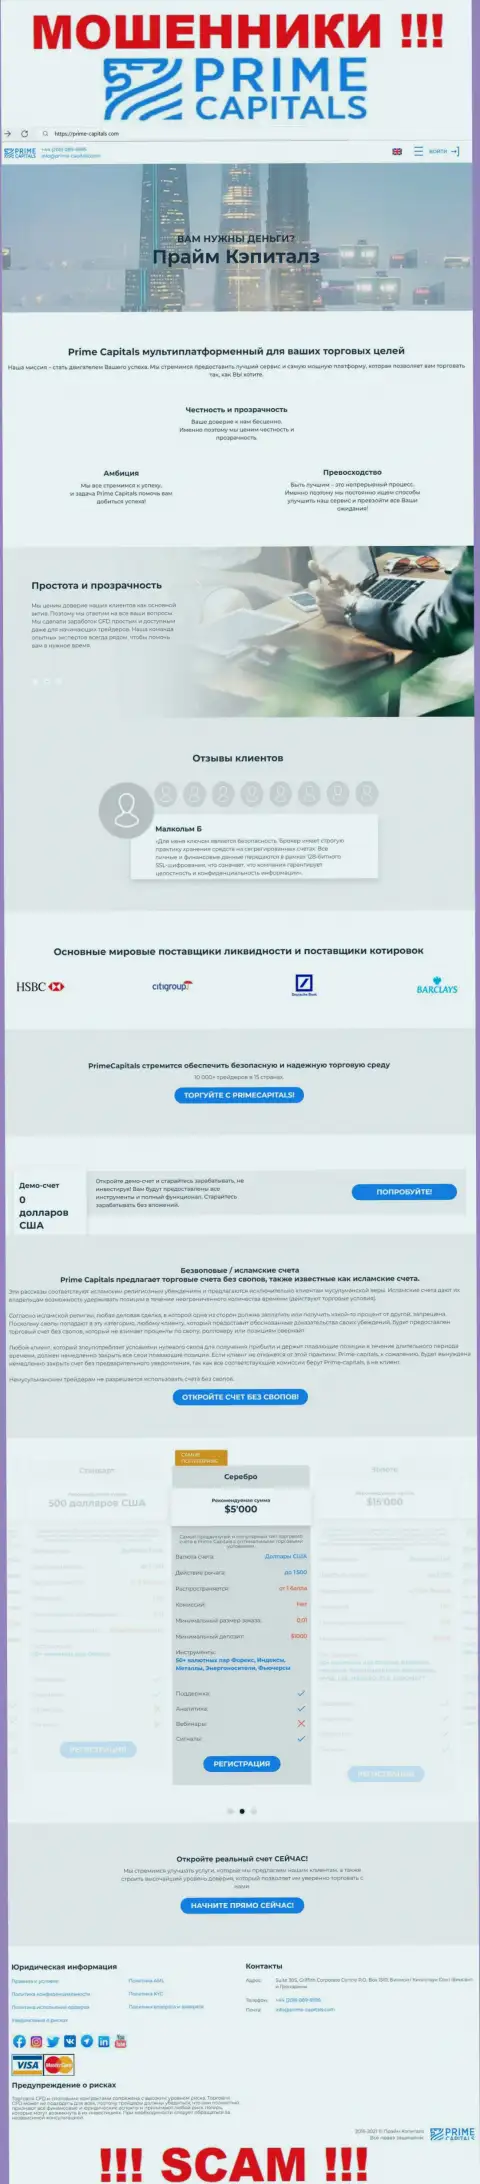 Официальный сайт мошенников Прайм Капиталс